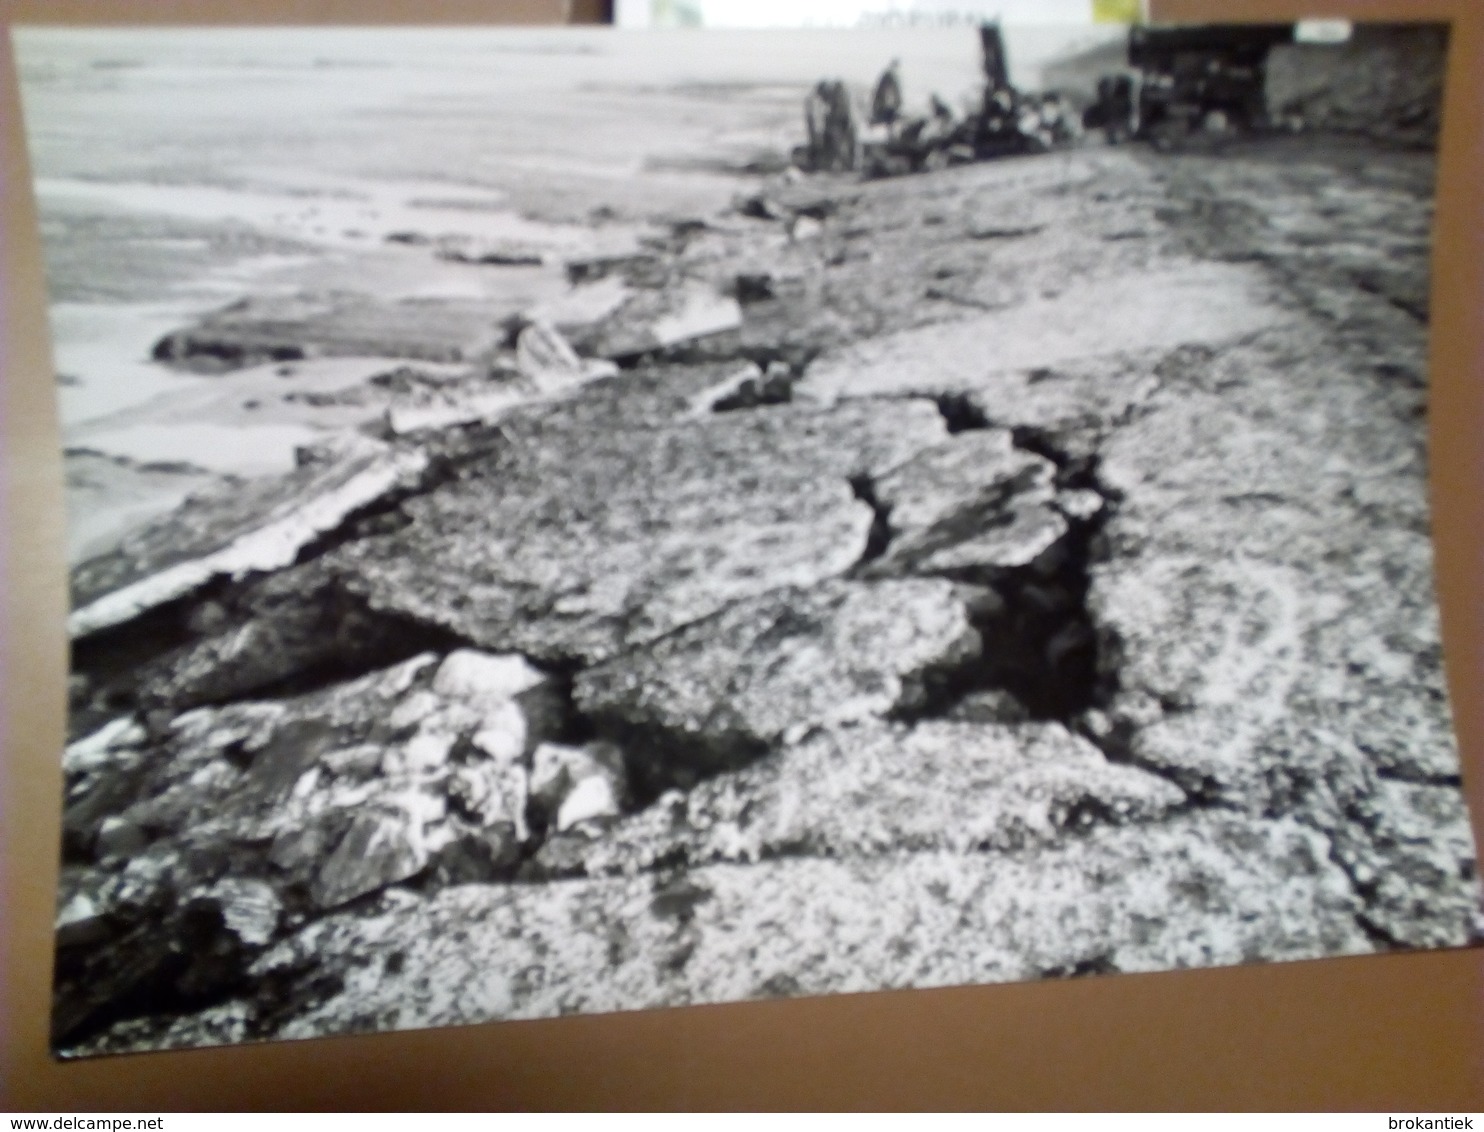 21 kaarten echte foto's Middelkerke zeedijk stormschade